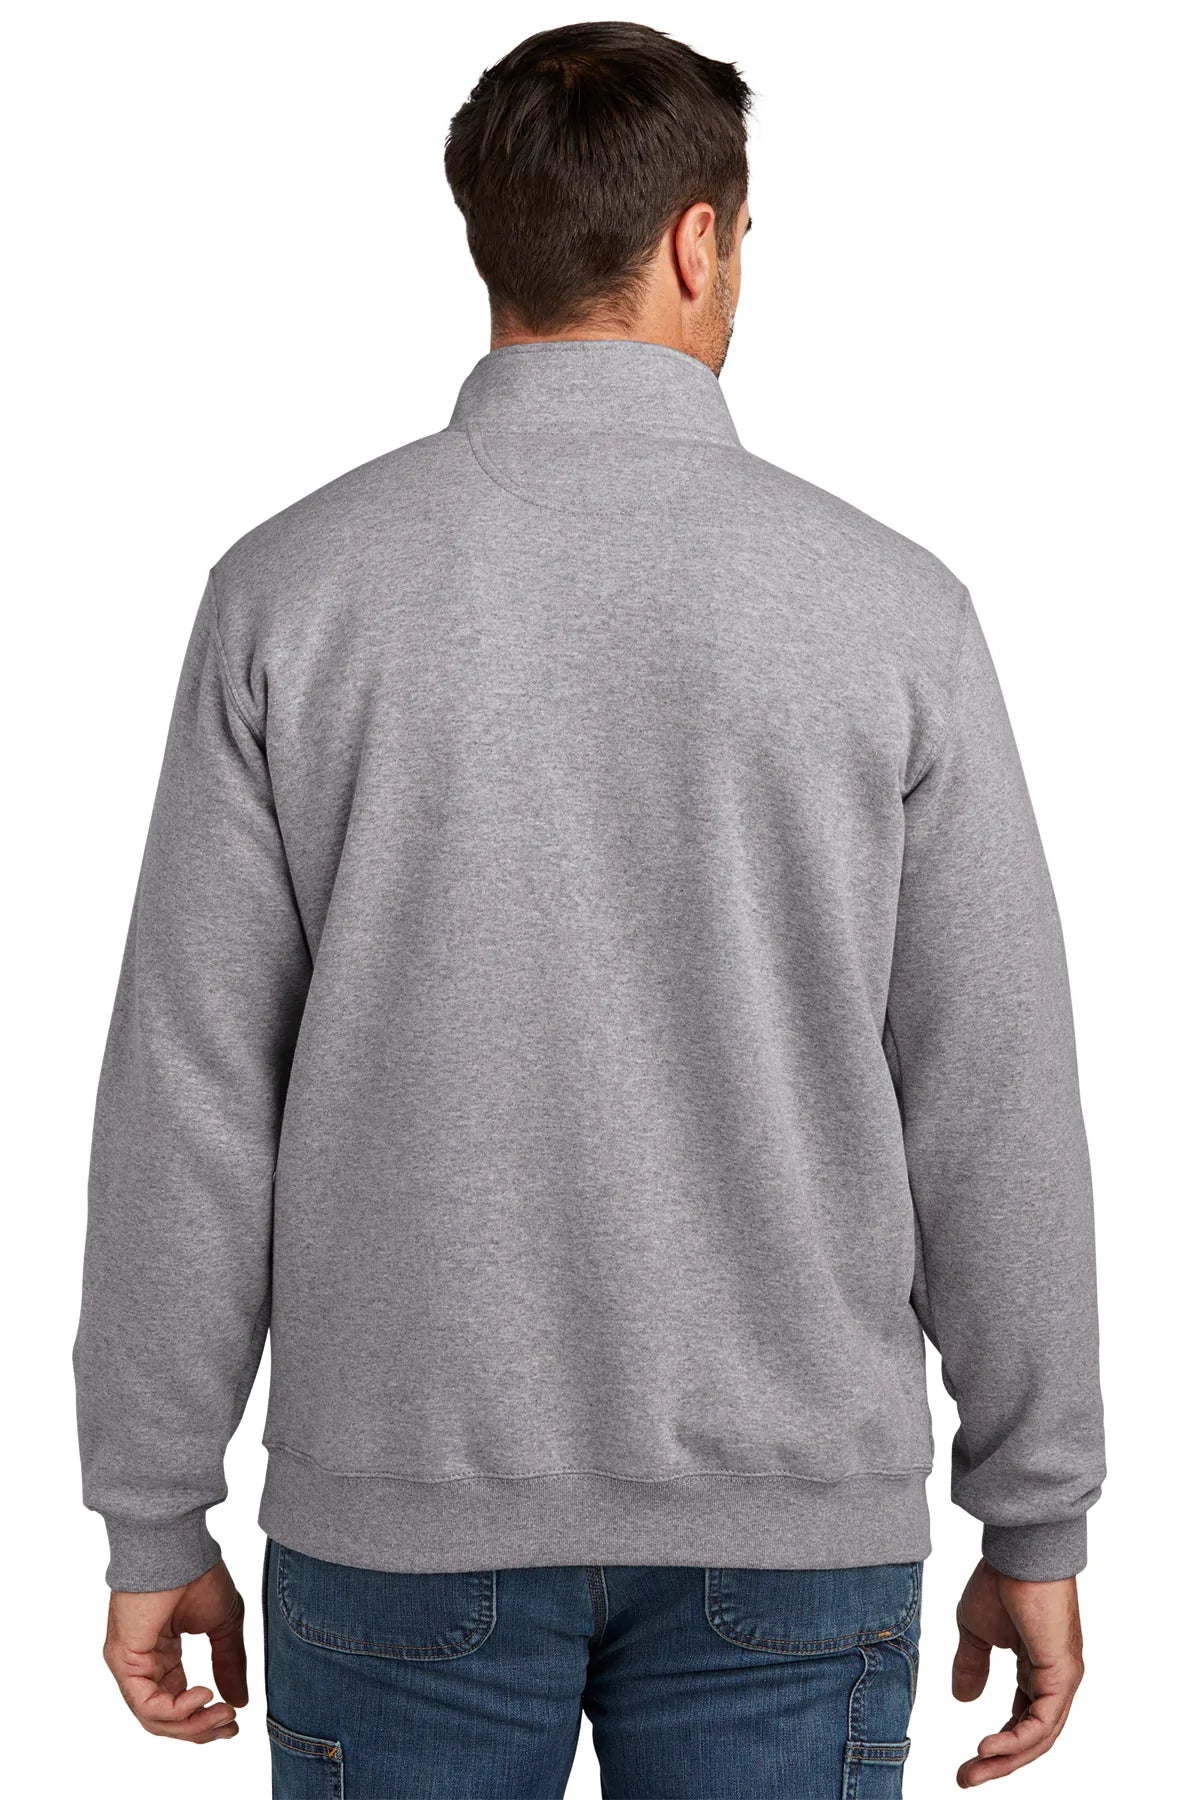 Carhartt Mock Neck Custom Sweatshirts, Heather Grey